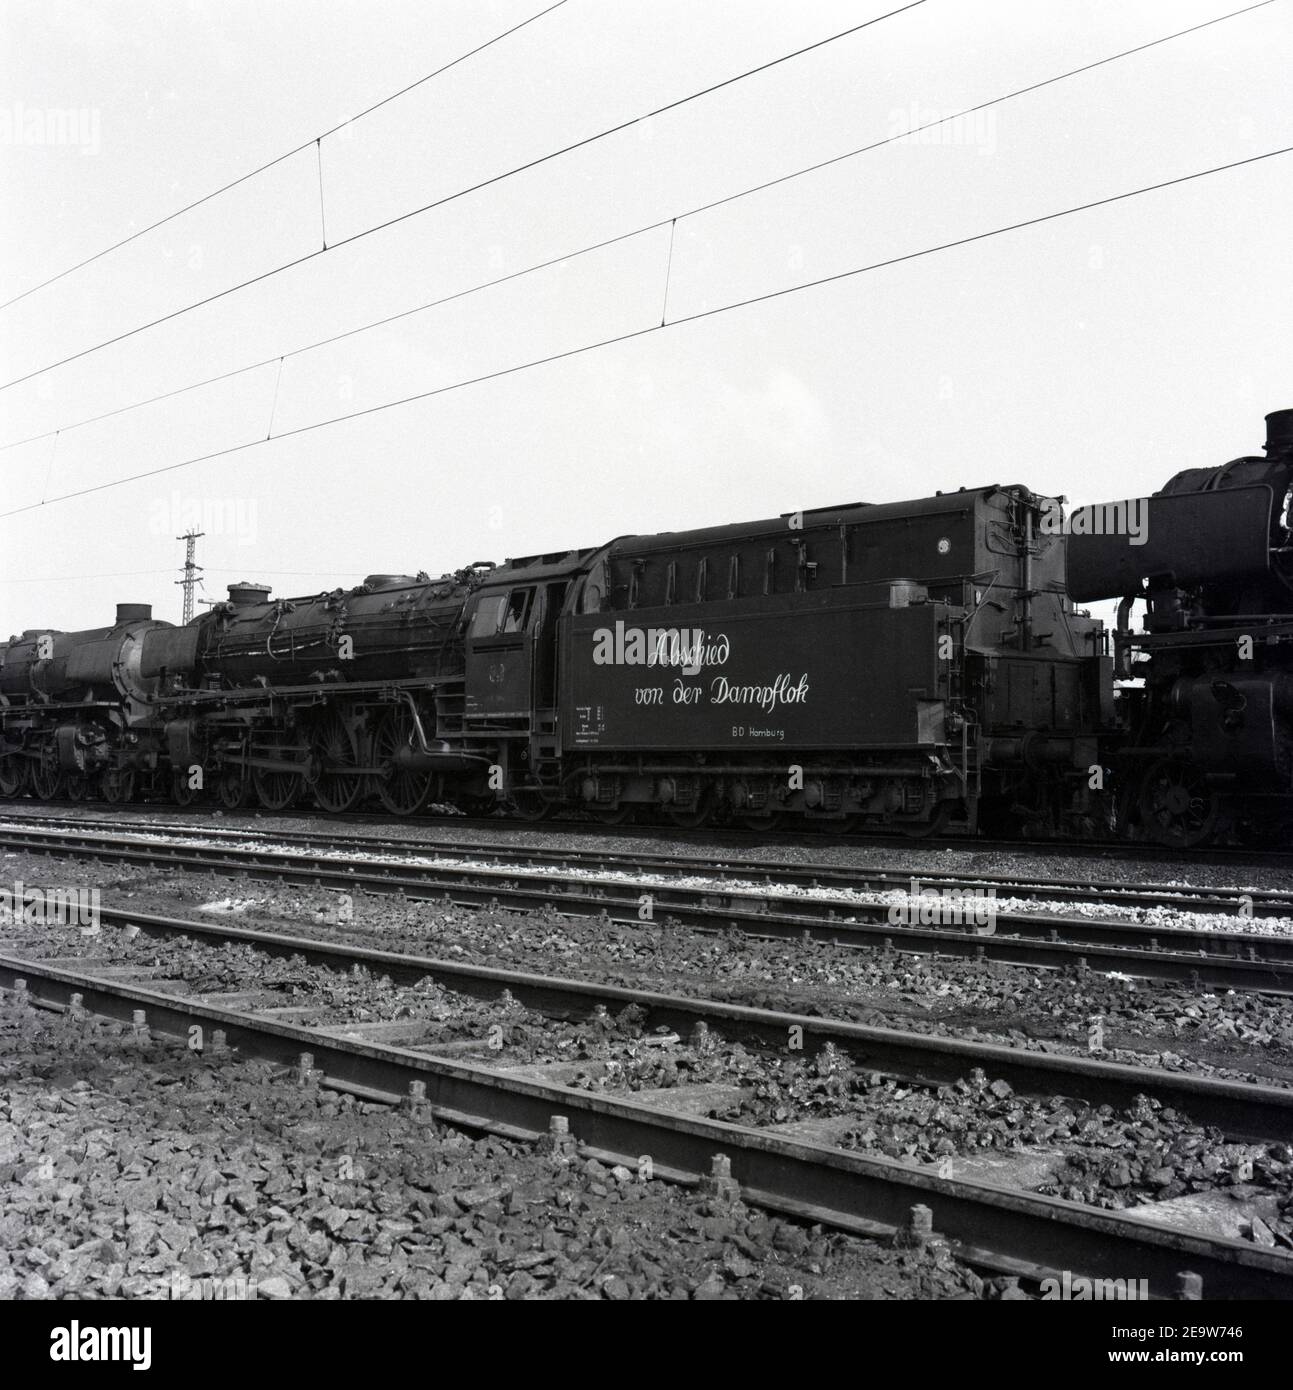 Bundesbahn Abschied 1970 in Hamburg von der Dampflok - German Railway Farewell to the Steam Locomotive in Hamburg in 1970 Stock Photo